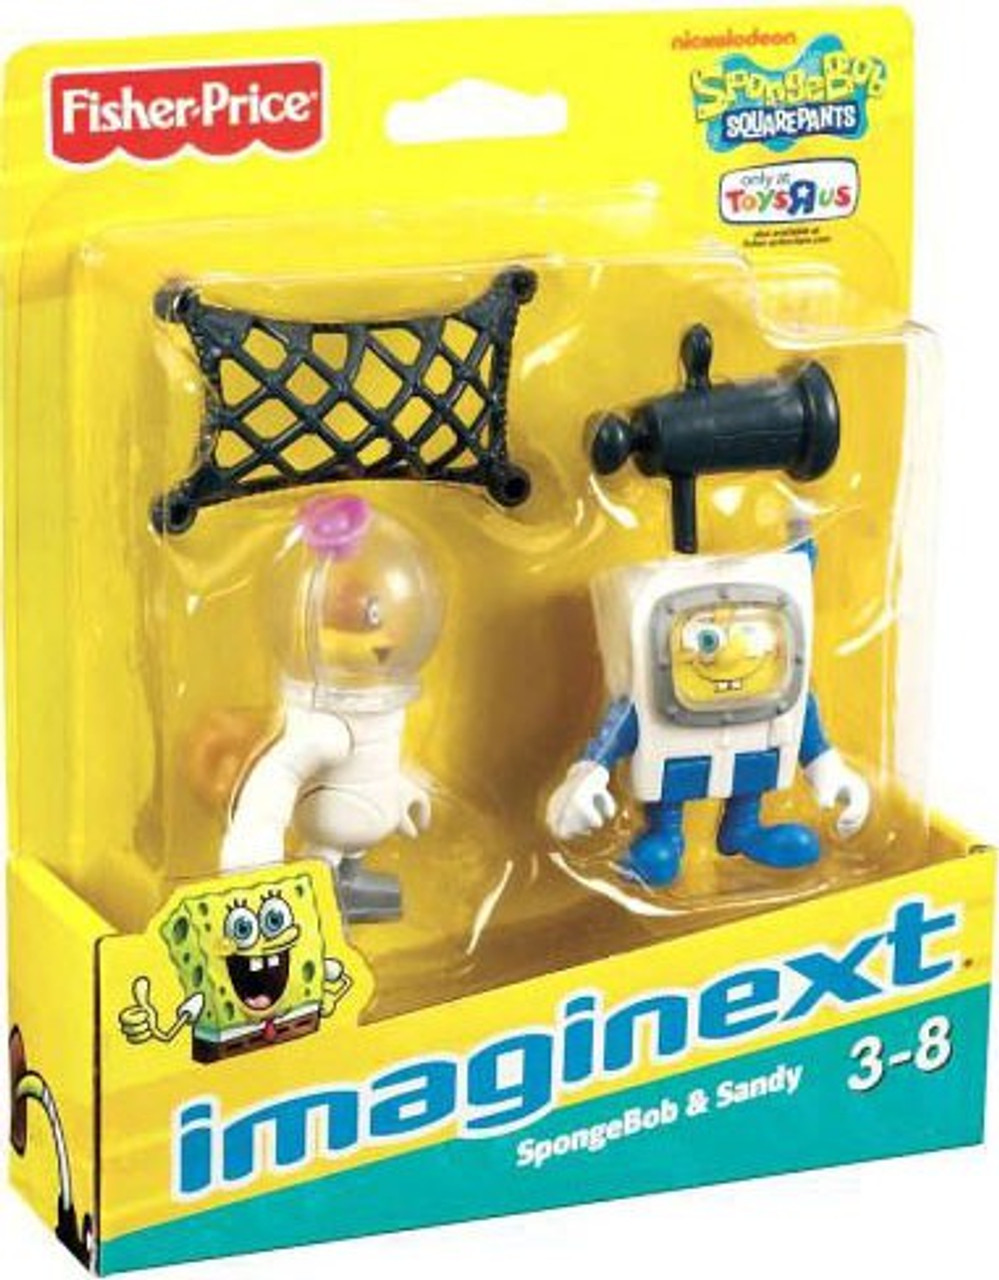 Spongebob Squarepants игрушки. Игрушка Сэнди минифигурка.